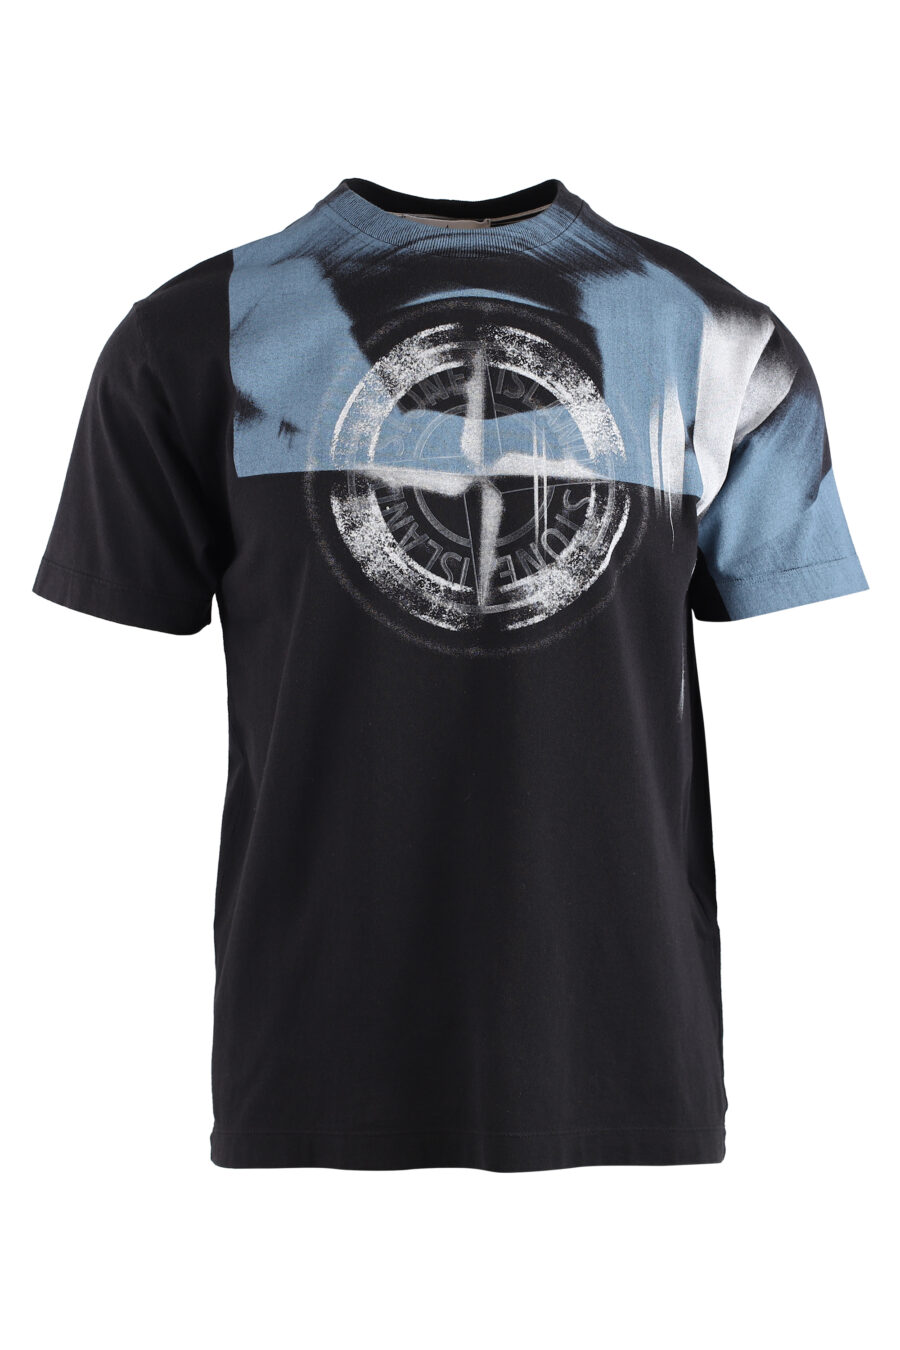 Camiseta negra con logo distorsionado blanco y azul - IMG 1407